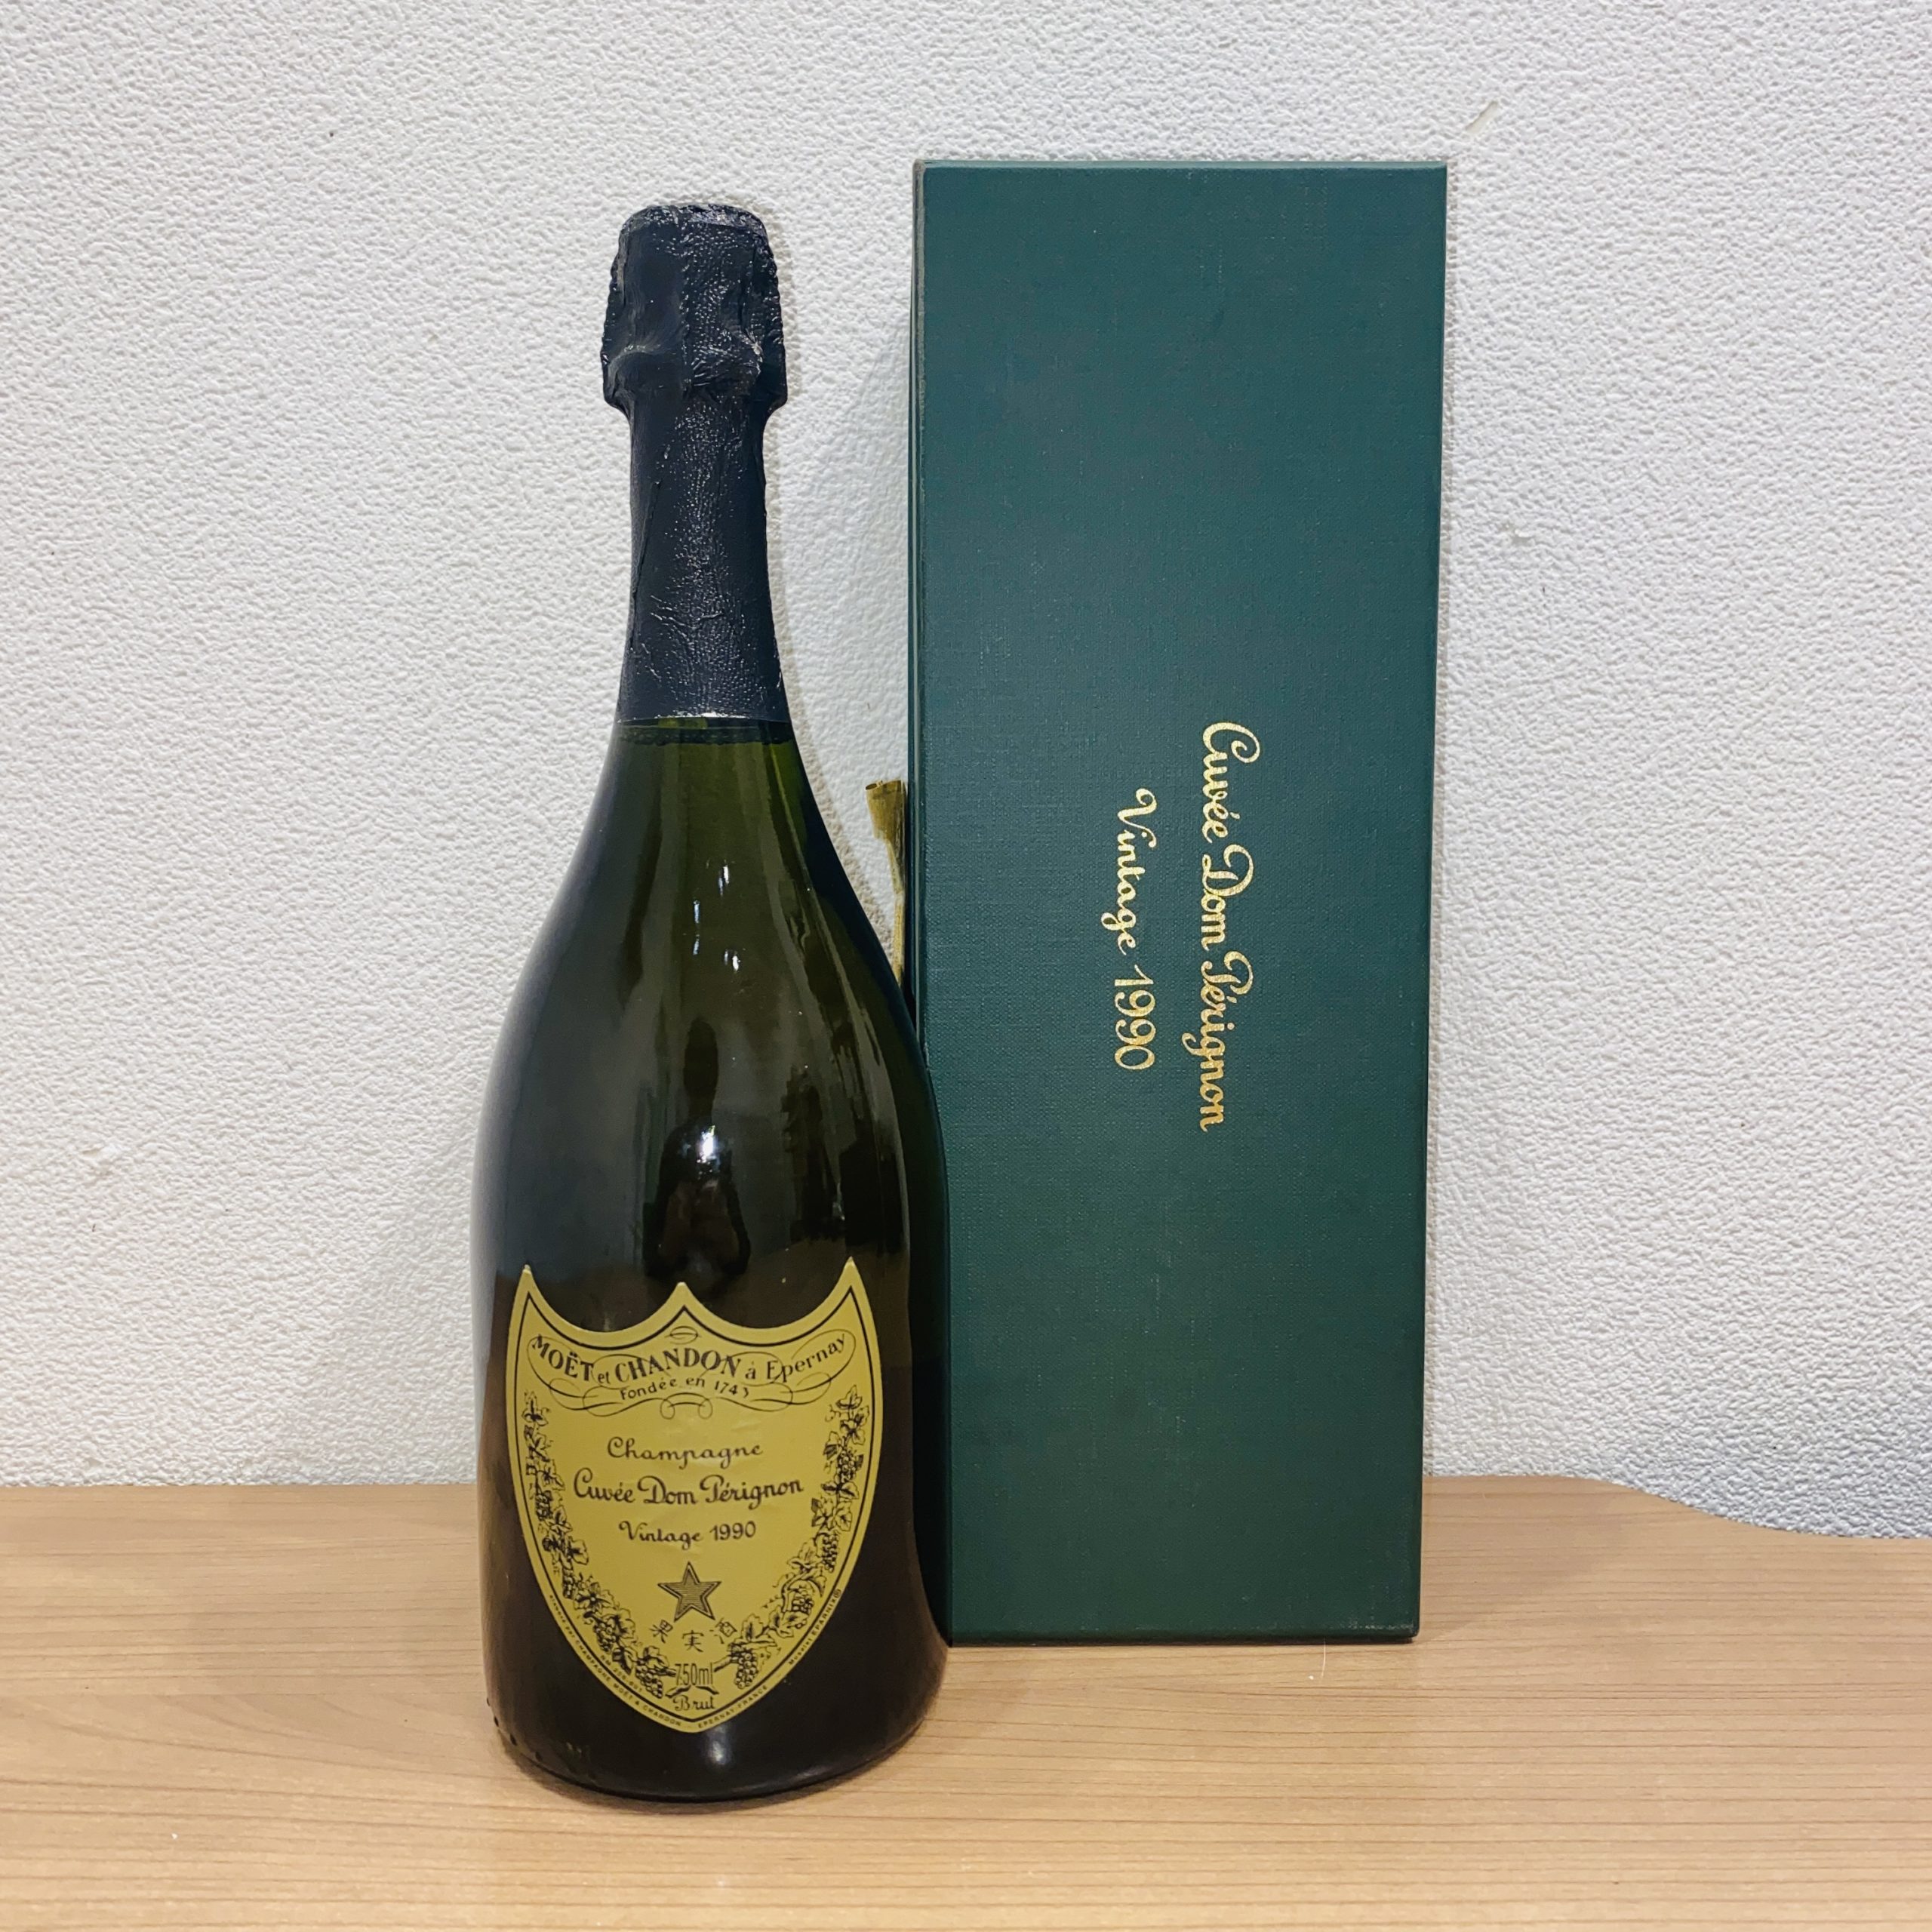 【Dom Perignon/ドンペリニヨン】Brut/ブリュット Vintage/ヴィンテージ 1990 シャンパン 750ml 12% 